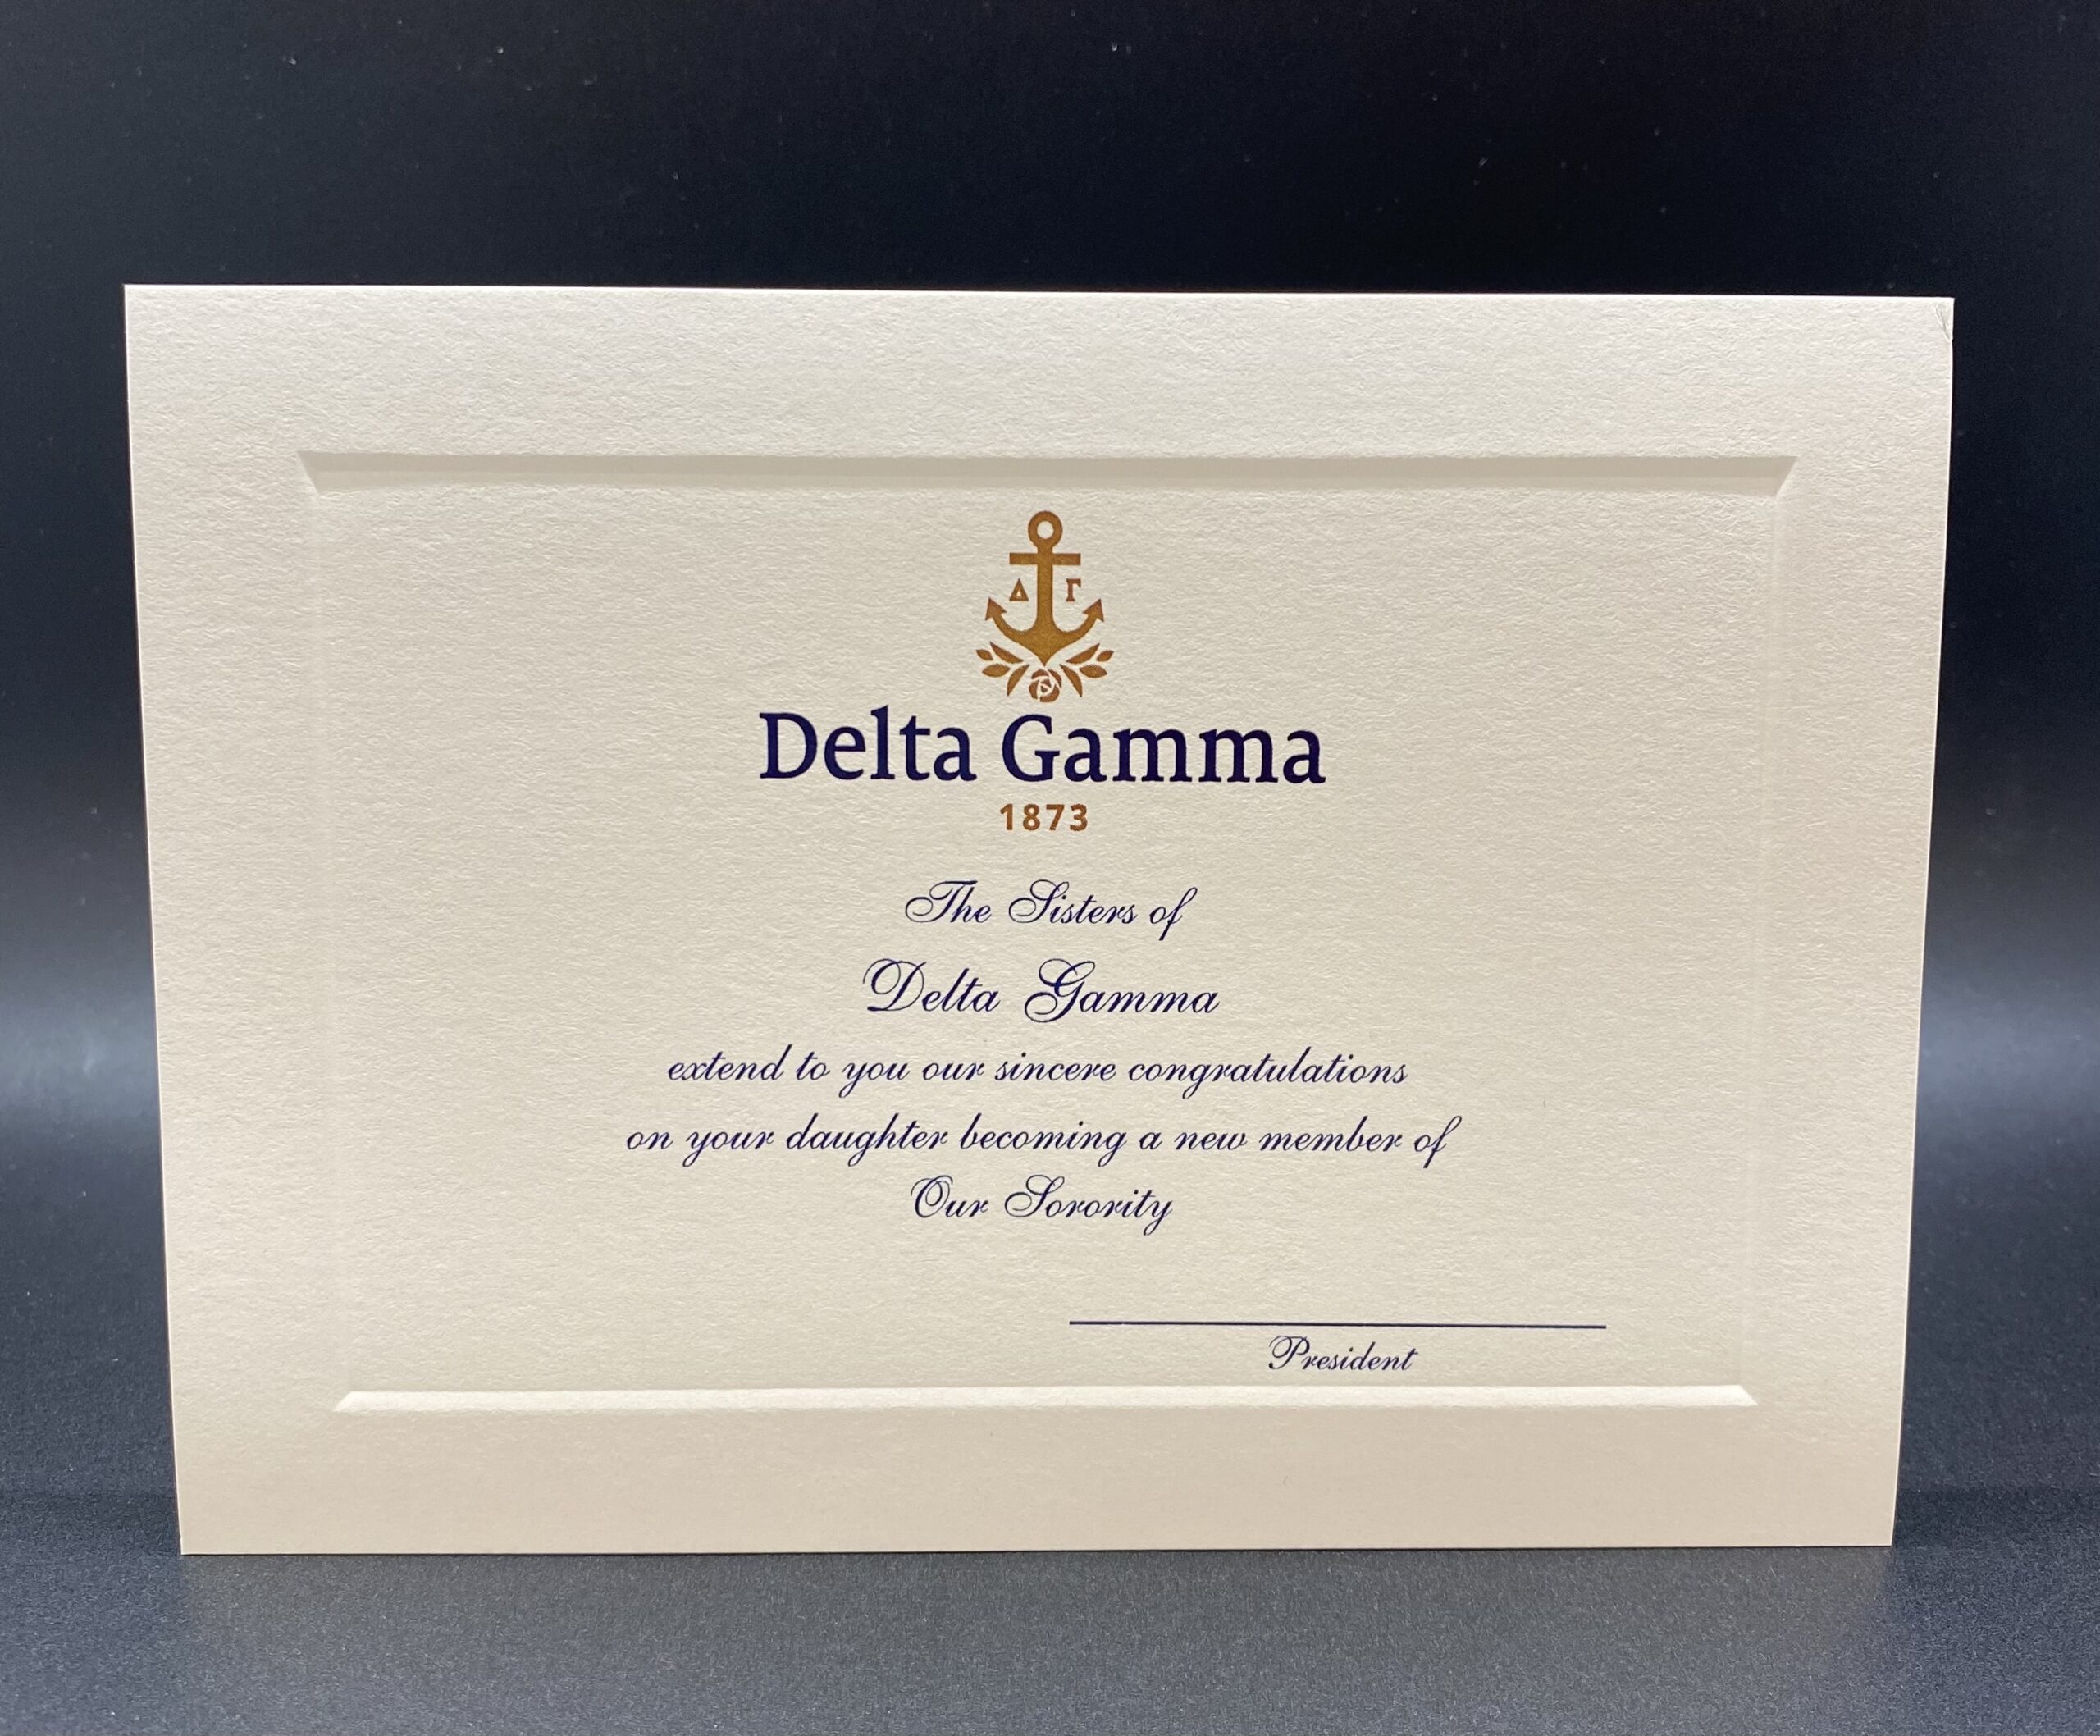 Official Parent Congratulations New Member Delta Gamma